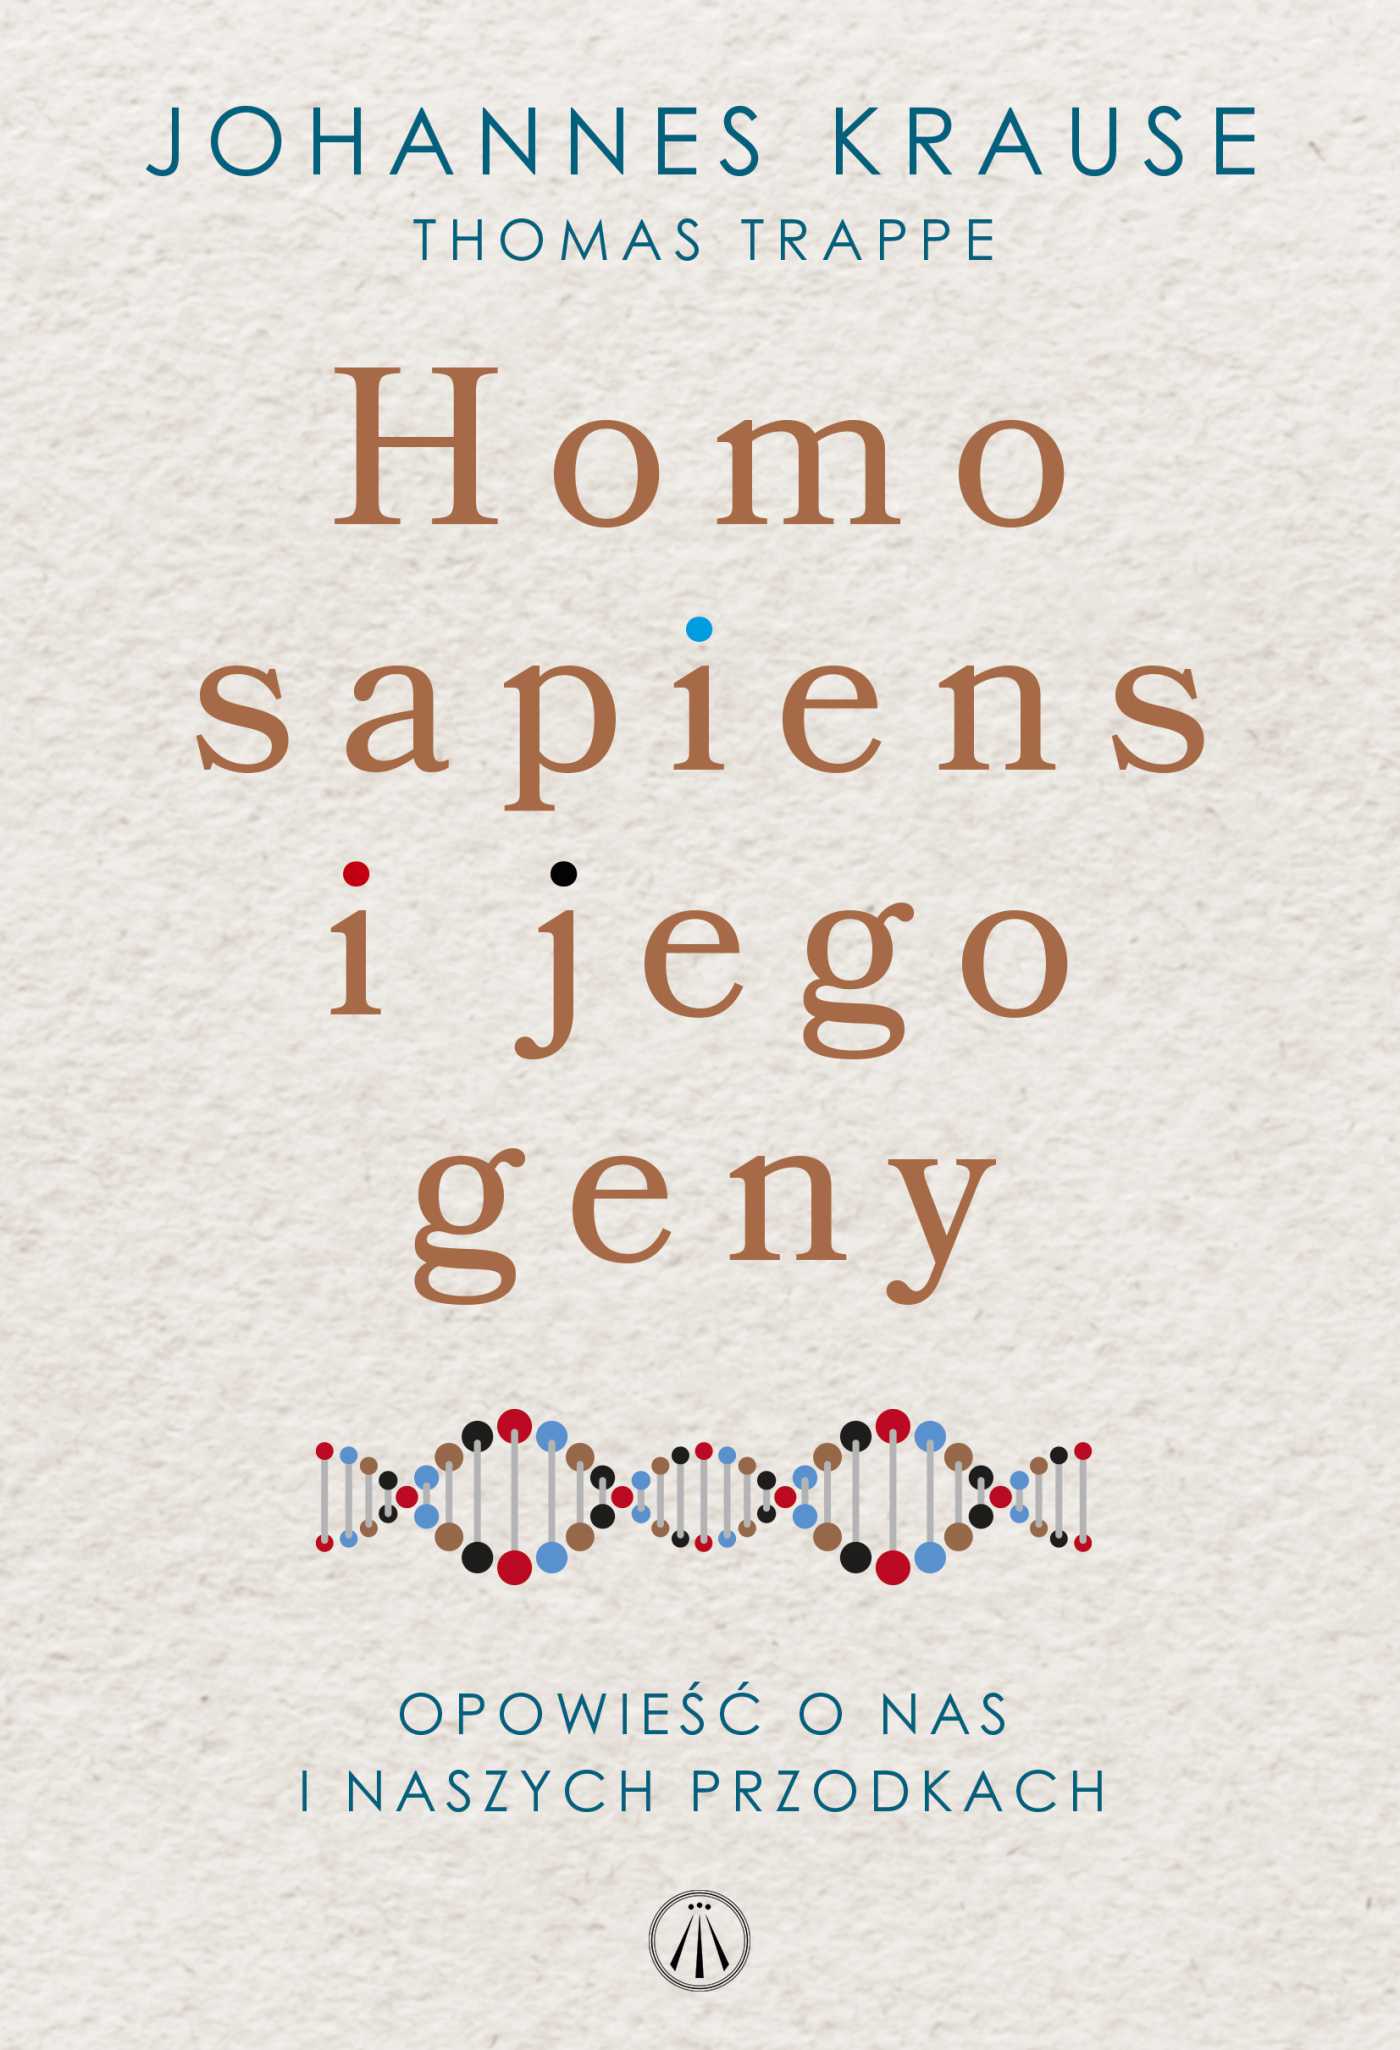 Okładka:Homo sapiens i jego geny. Opowieść o nas i naszych przodkach 